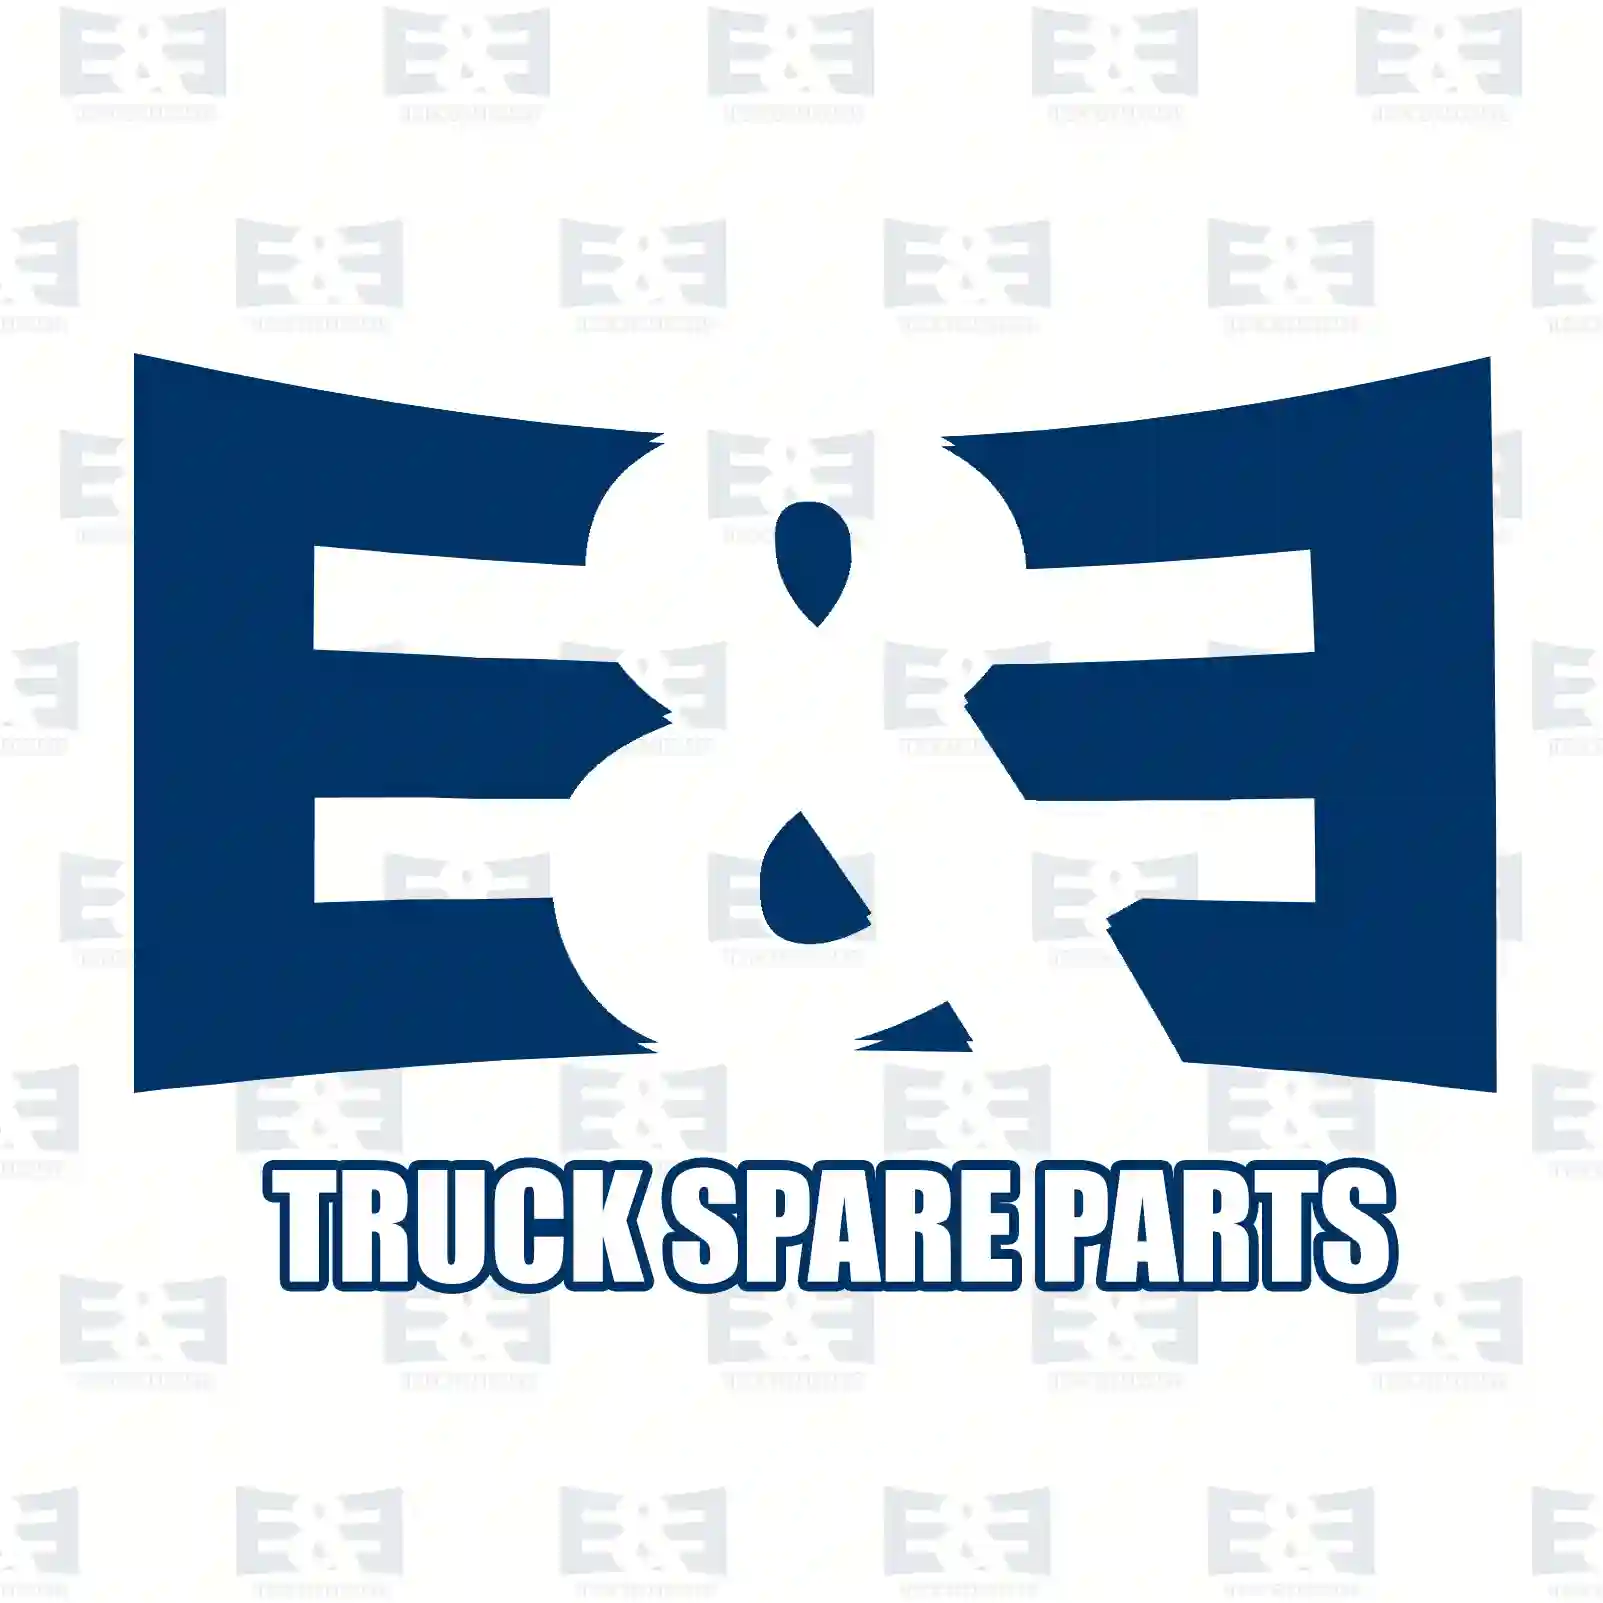 Radiator, 2E2203103, 9425000703, 9425001003, 9425001603 ||  2E2203103 E&E Truck Spare Parts | Truck Spare Parts, Auotomotive Spare Parts Radiator, 2E2203103, 9425000703, 9425001003, 9425001603 ||  2E2203103 E&E Truck Spare Parts | Truck Spare Parts, Auotomotive Spare Parts